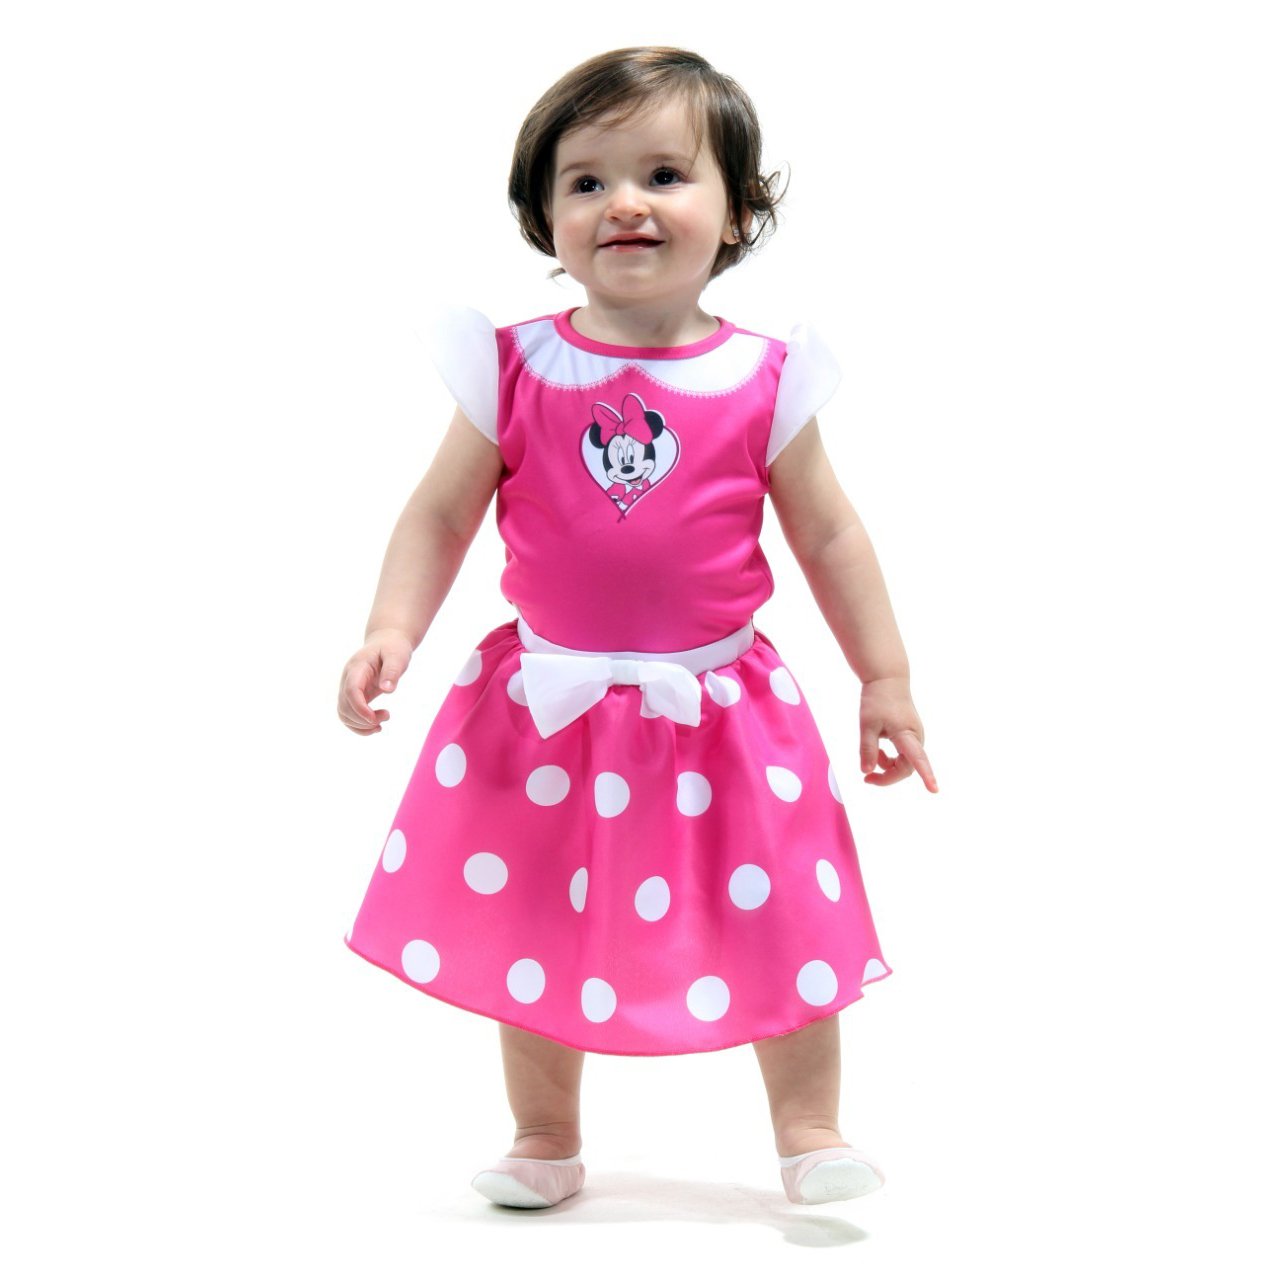 Fantasia Vestido Minnie Bebe Rosa - Tamanho M (18 meses) - 922013- Sulamericana